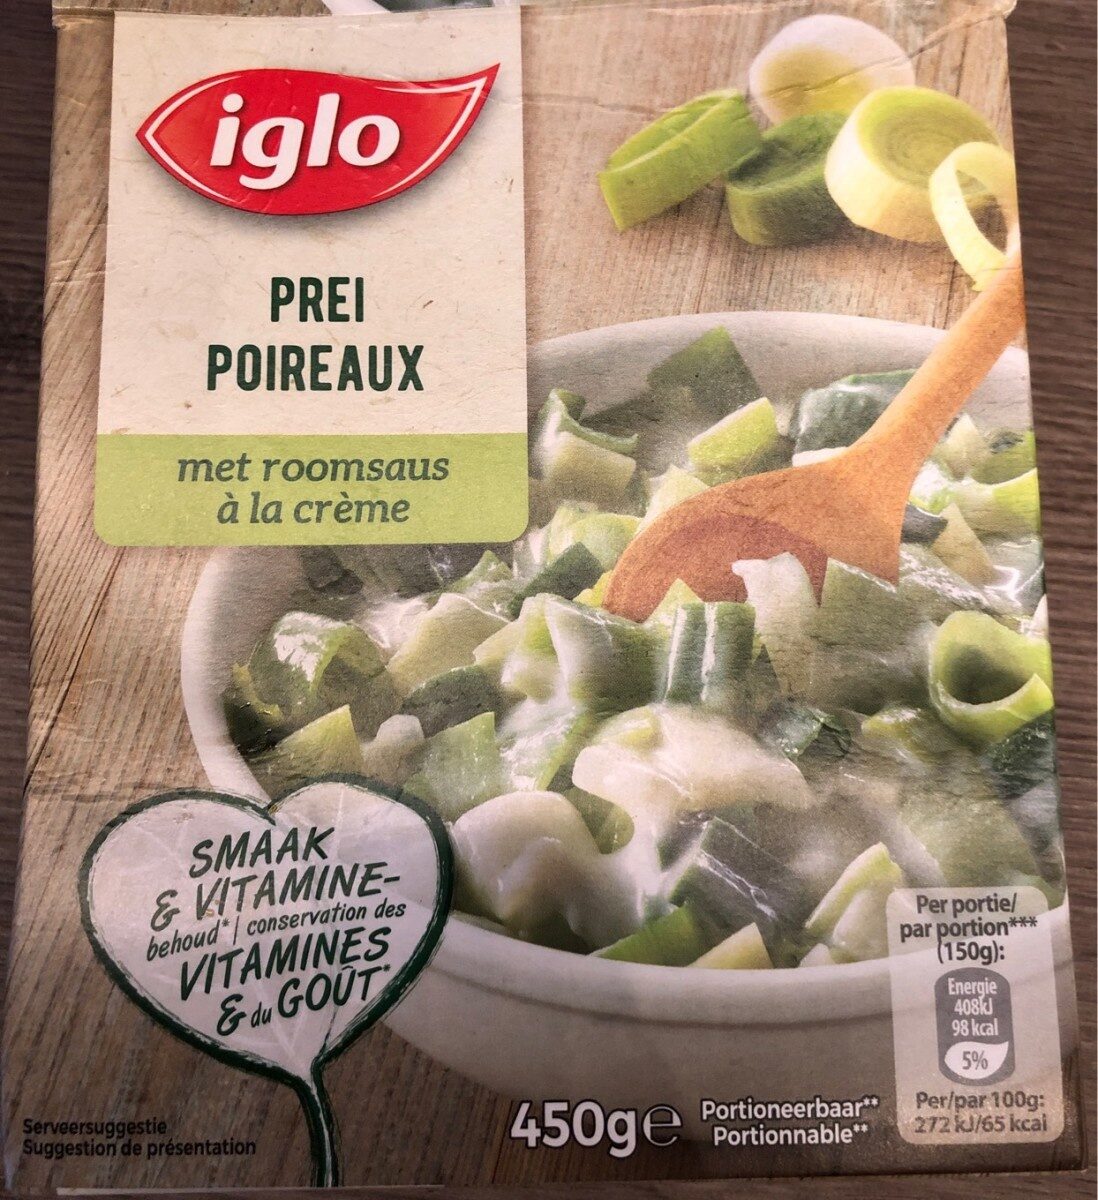 Iglo Poireaux a la creme - Product - fr